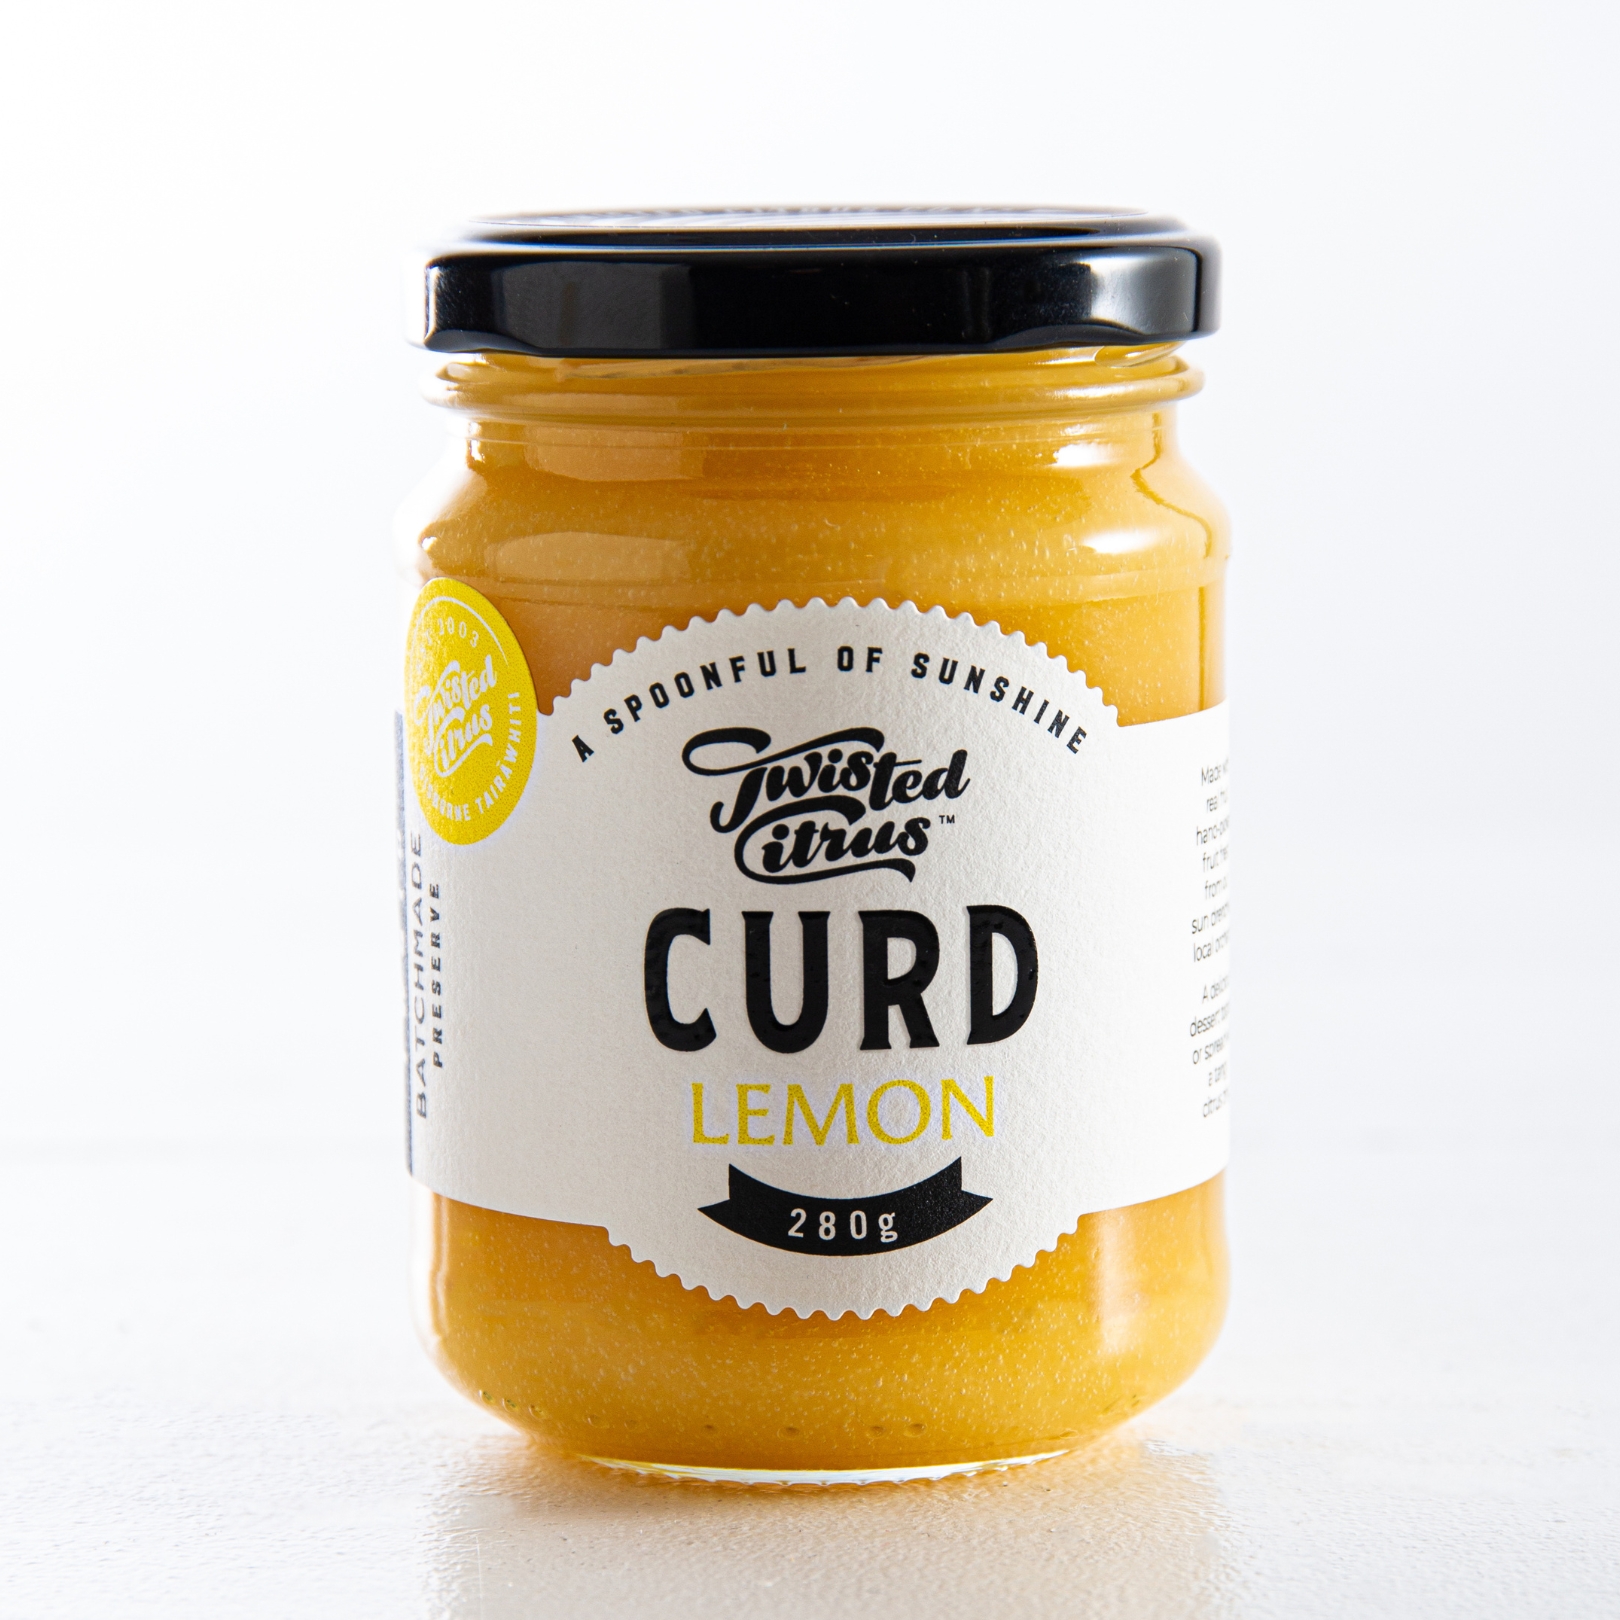 Buy Lemon Curd Online NZ